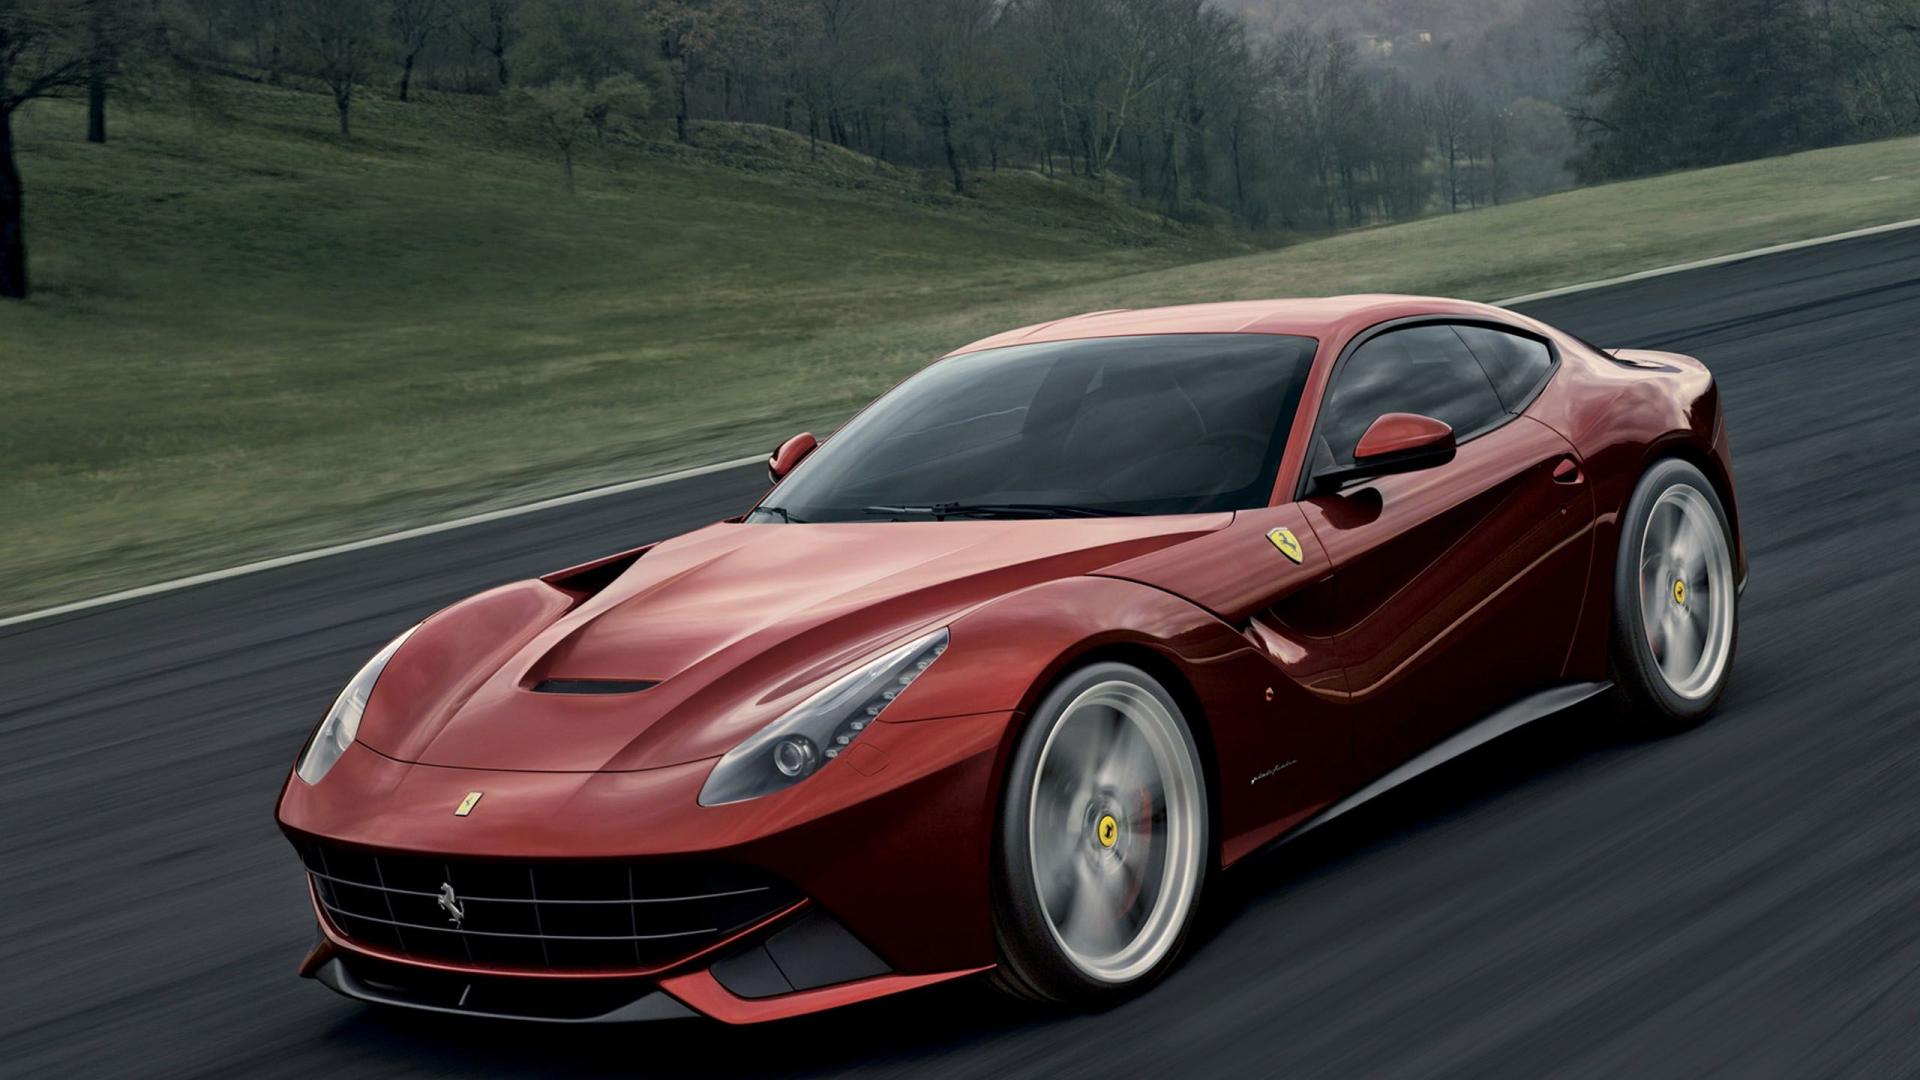 Ferrari-F12-Berlinetta-Sports-Cars-HD-Wallpaper